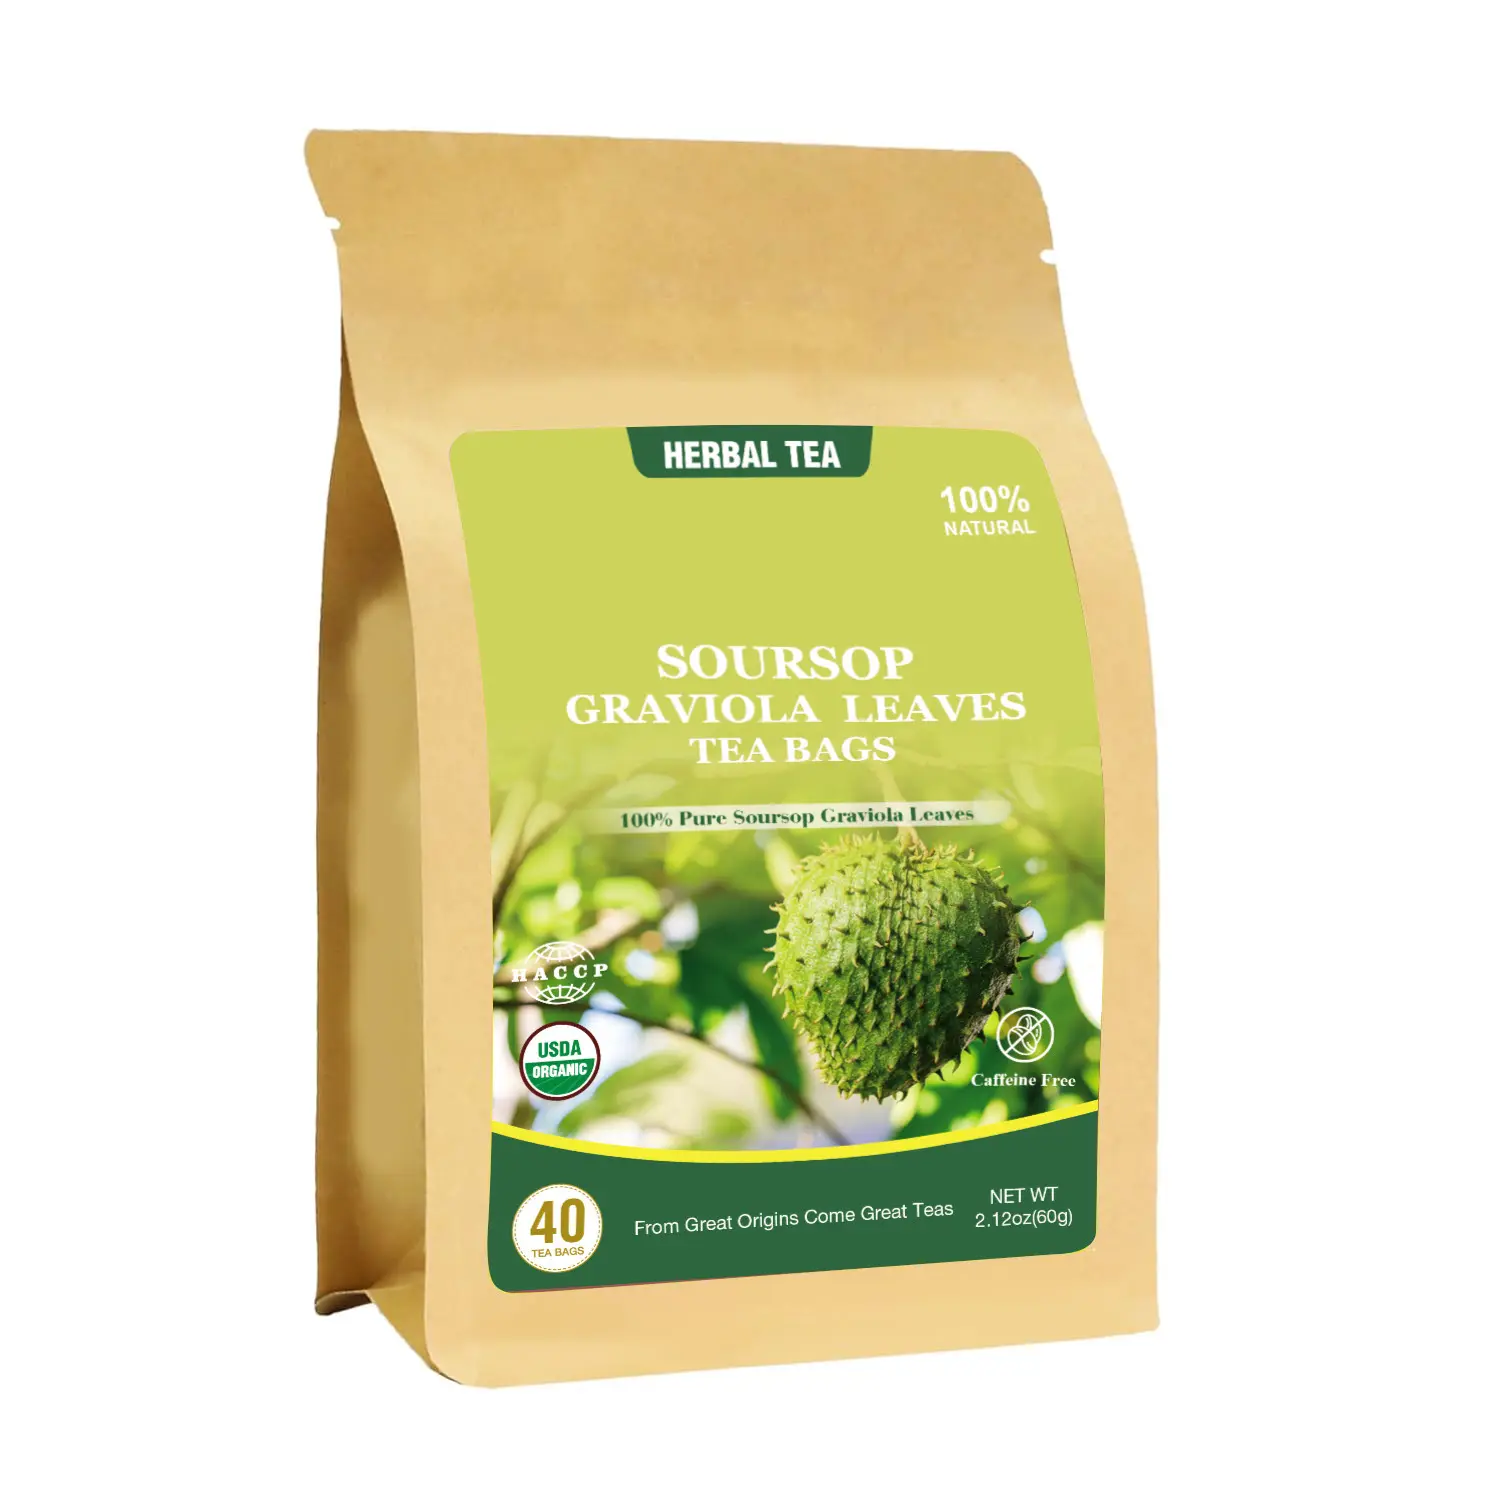 100% Natural Herbal Tea Premium Dried Soursop Graviola Leaf Tea Bags